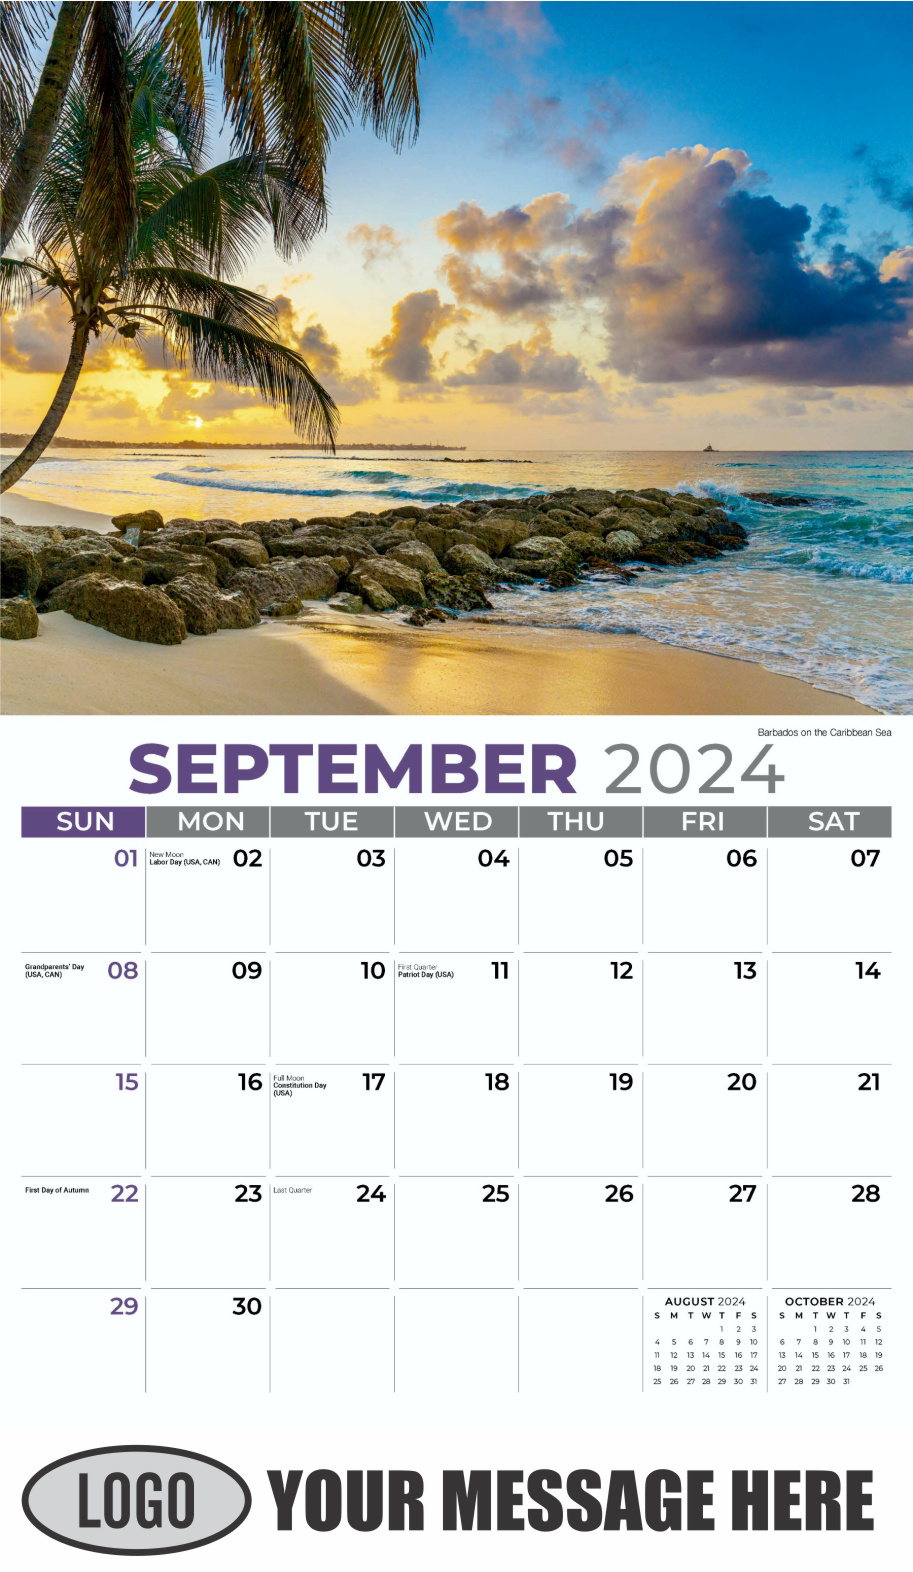 Sun, Sand and Surf 2024 Business Advertsing Wall Calendar - September